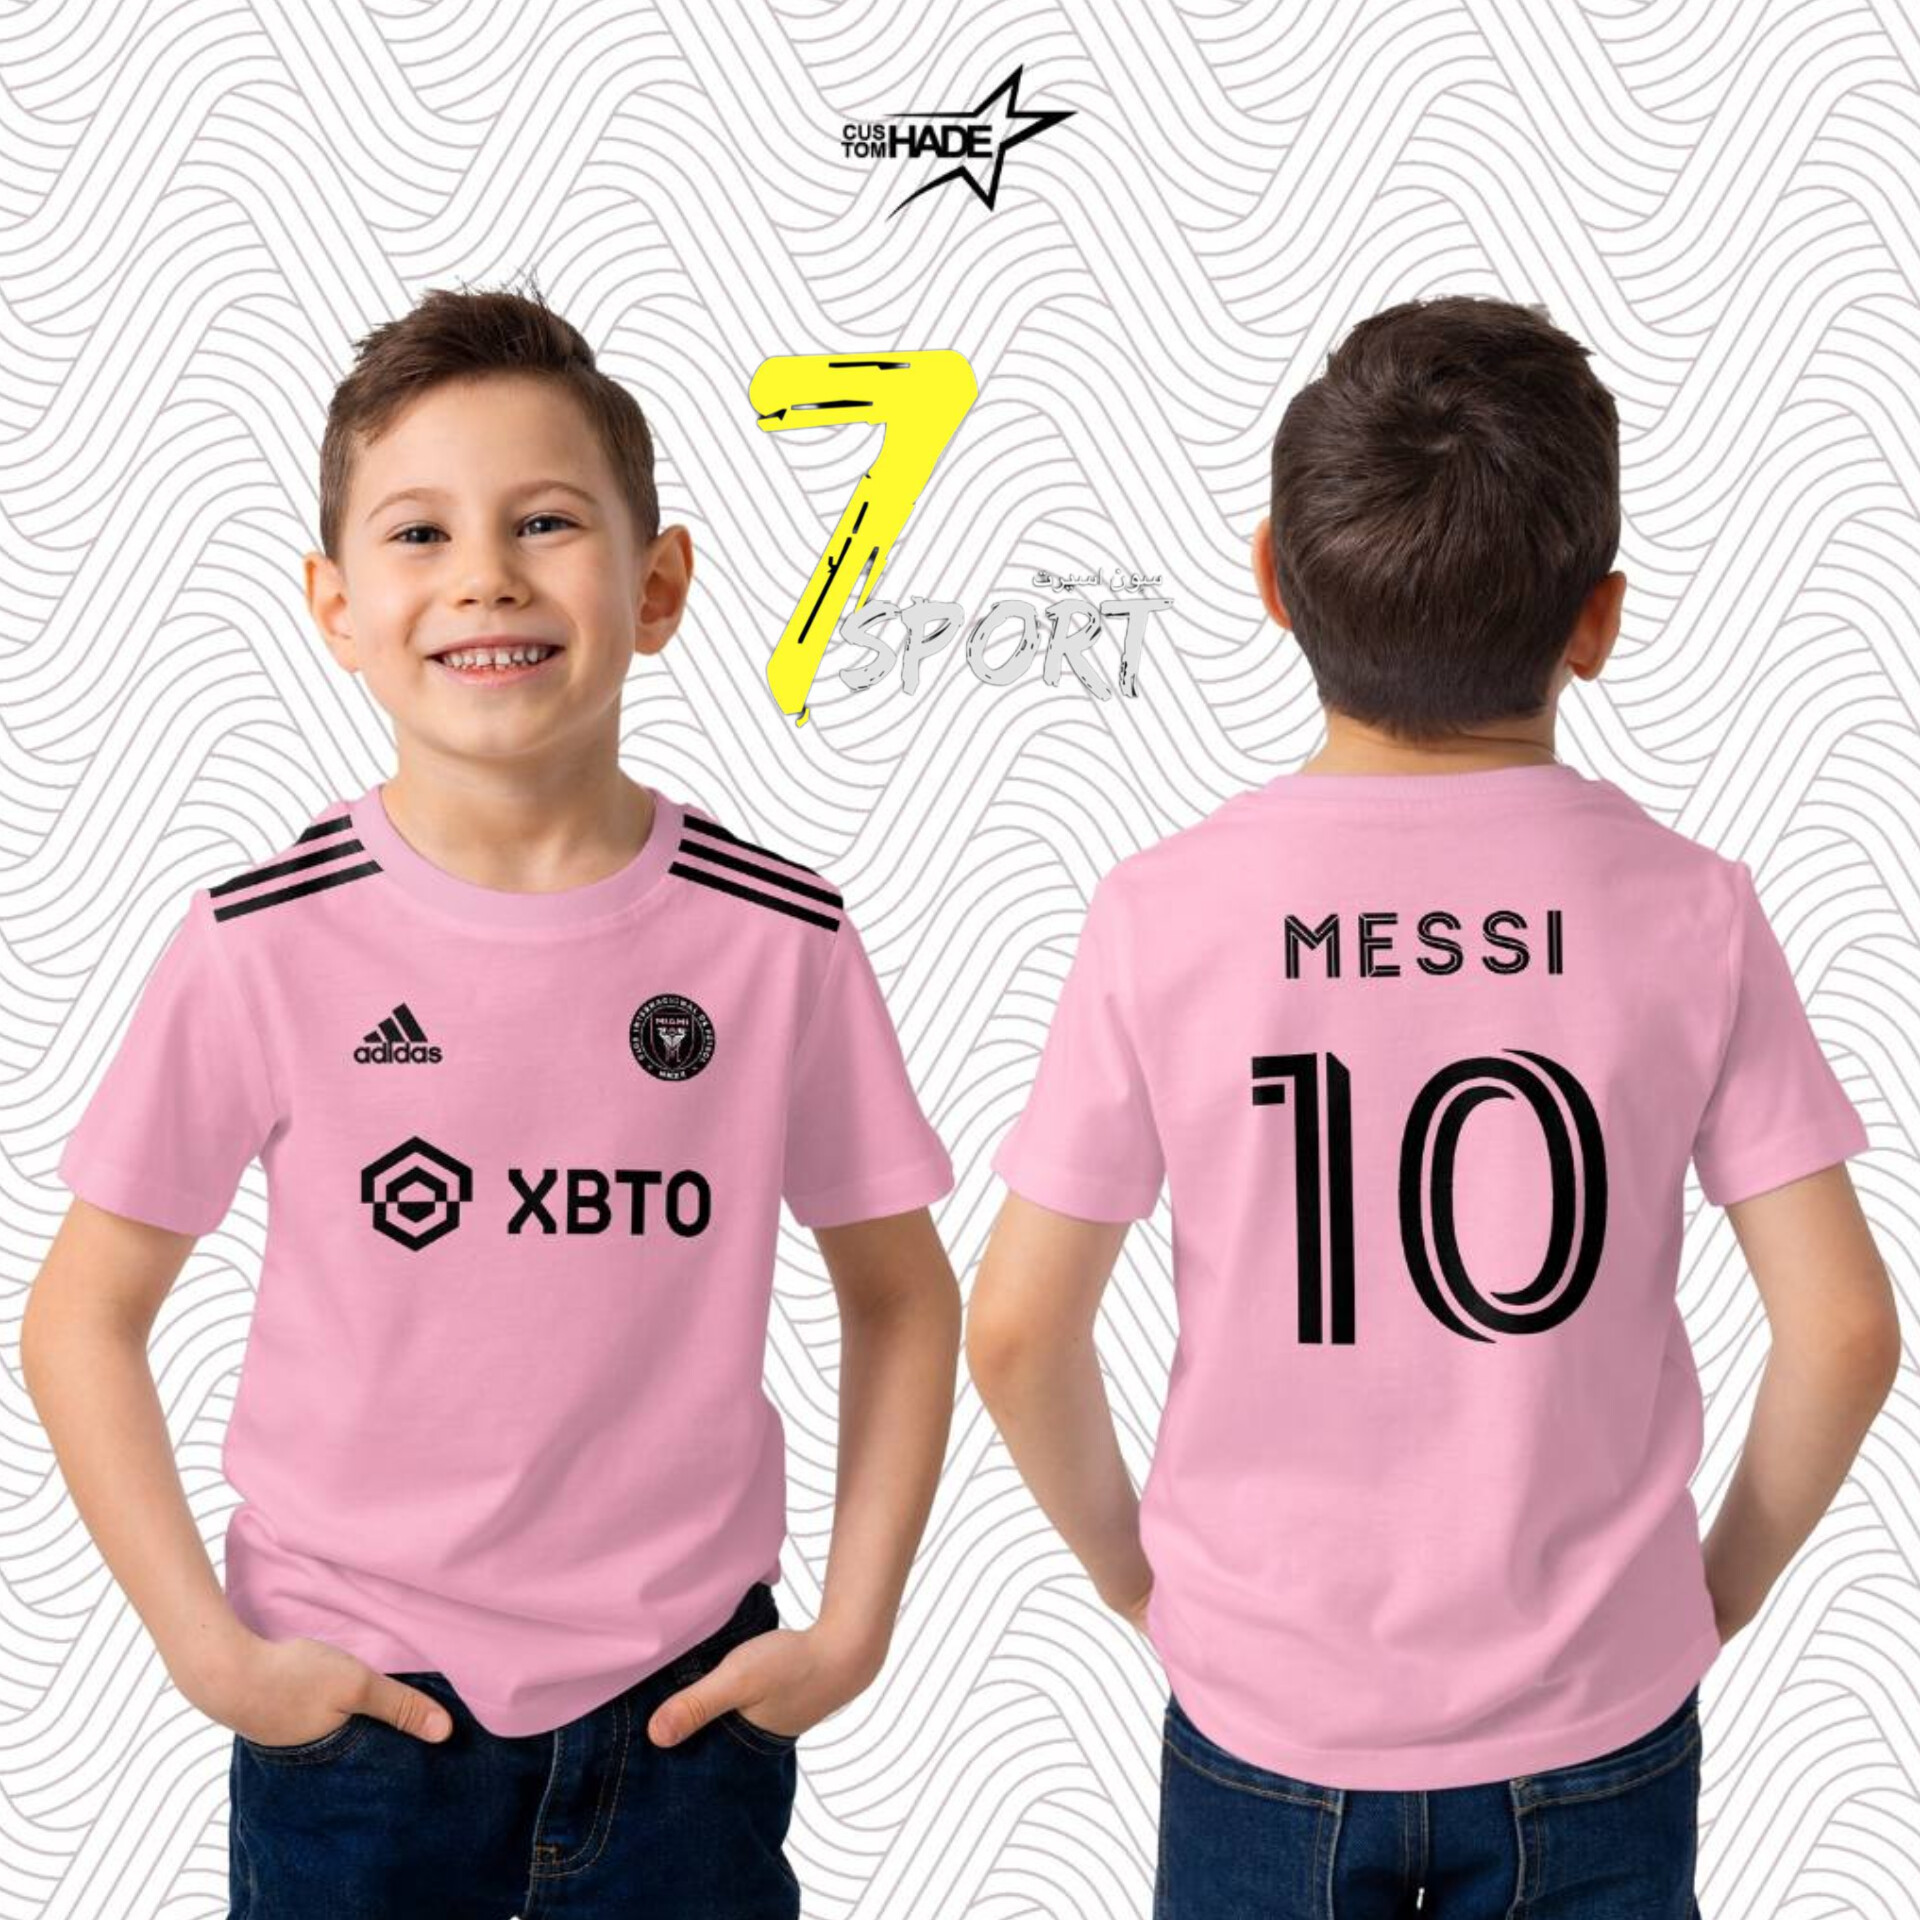 لباس فوتبال بچگانه اینتر میامی